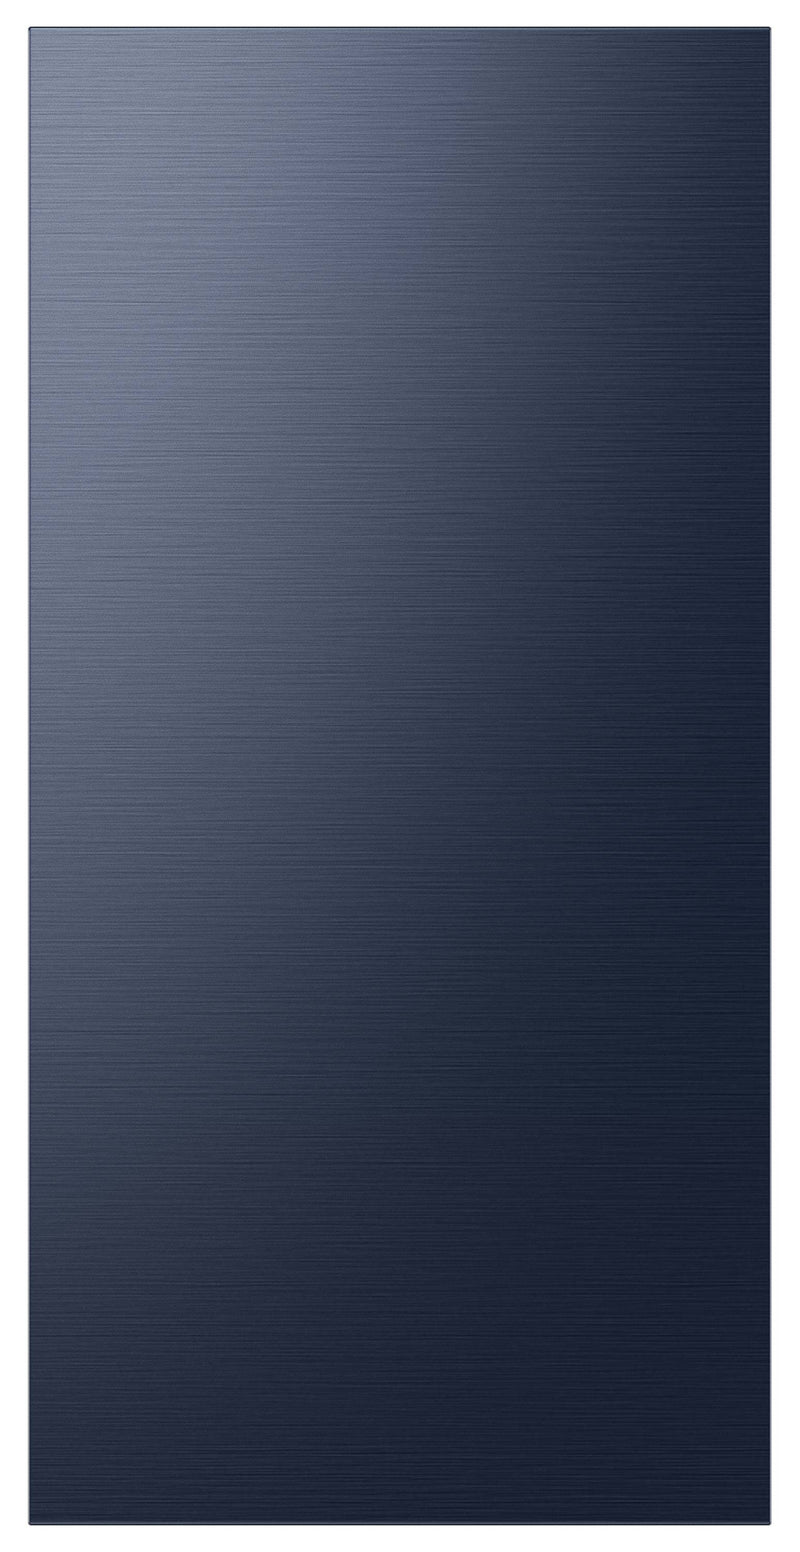 Samsung BESPOKE Navy Steel Top Door Panel for 4-Door Refrigerator - RA-F18DU4QN/AA